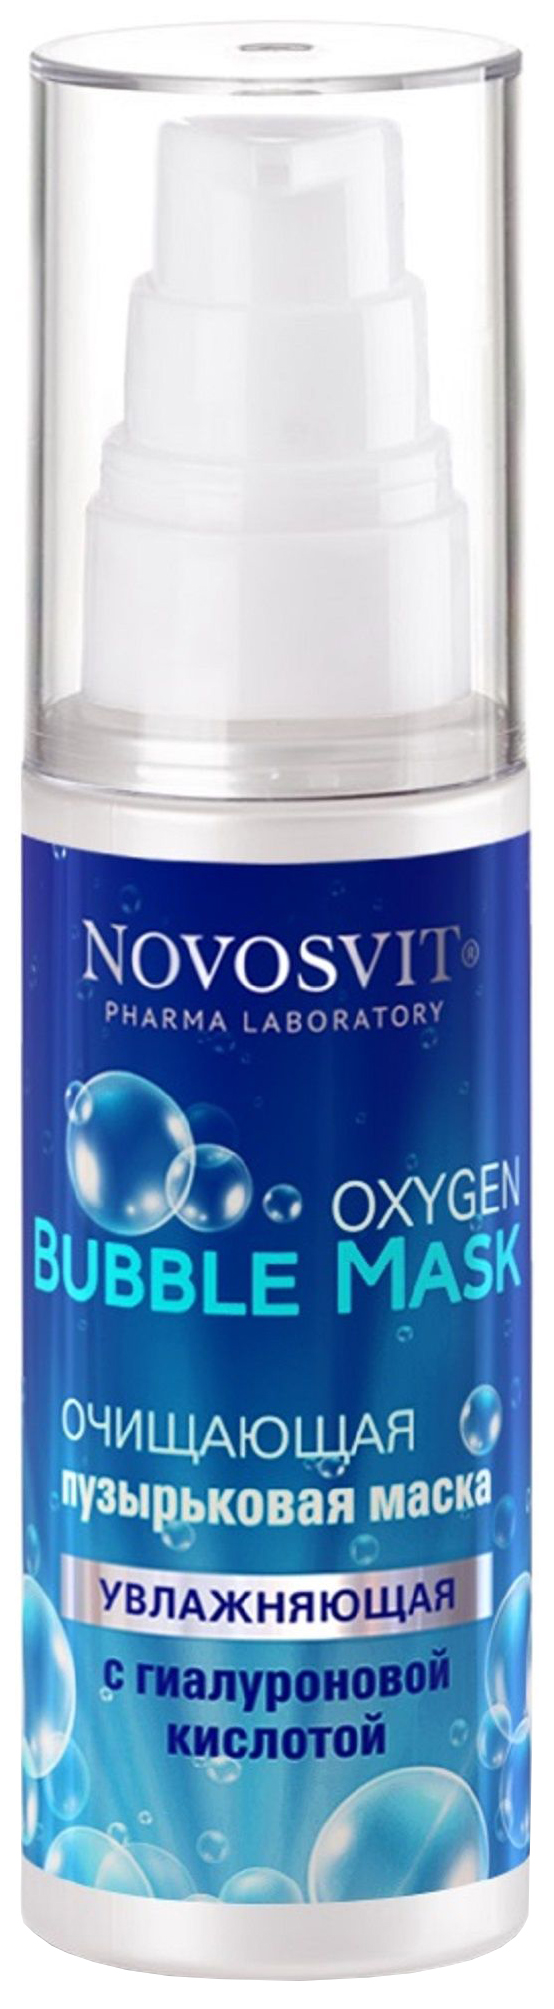 Купить Маска для лица Novosvit Oxygen Bubble Mask С гиалуроновой кислотой 40 мл